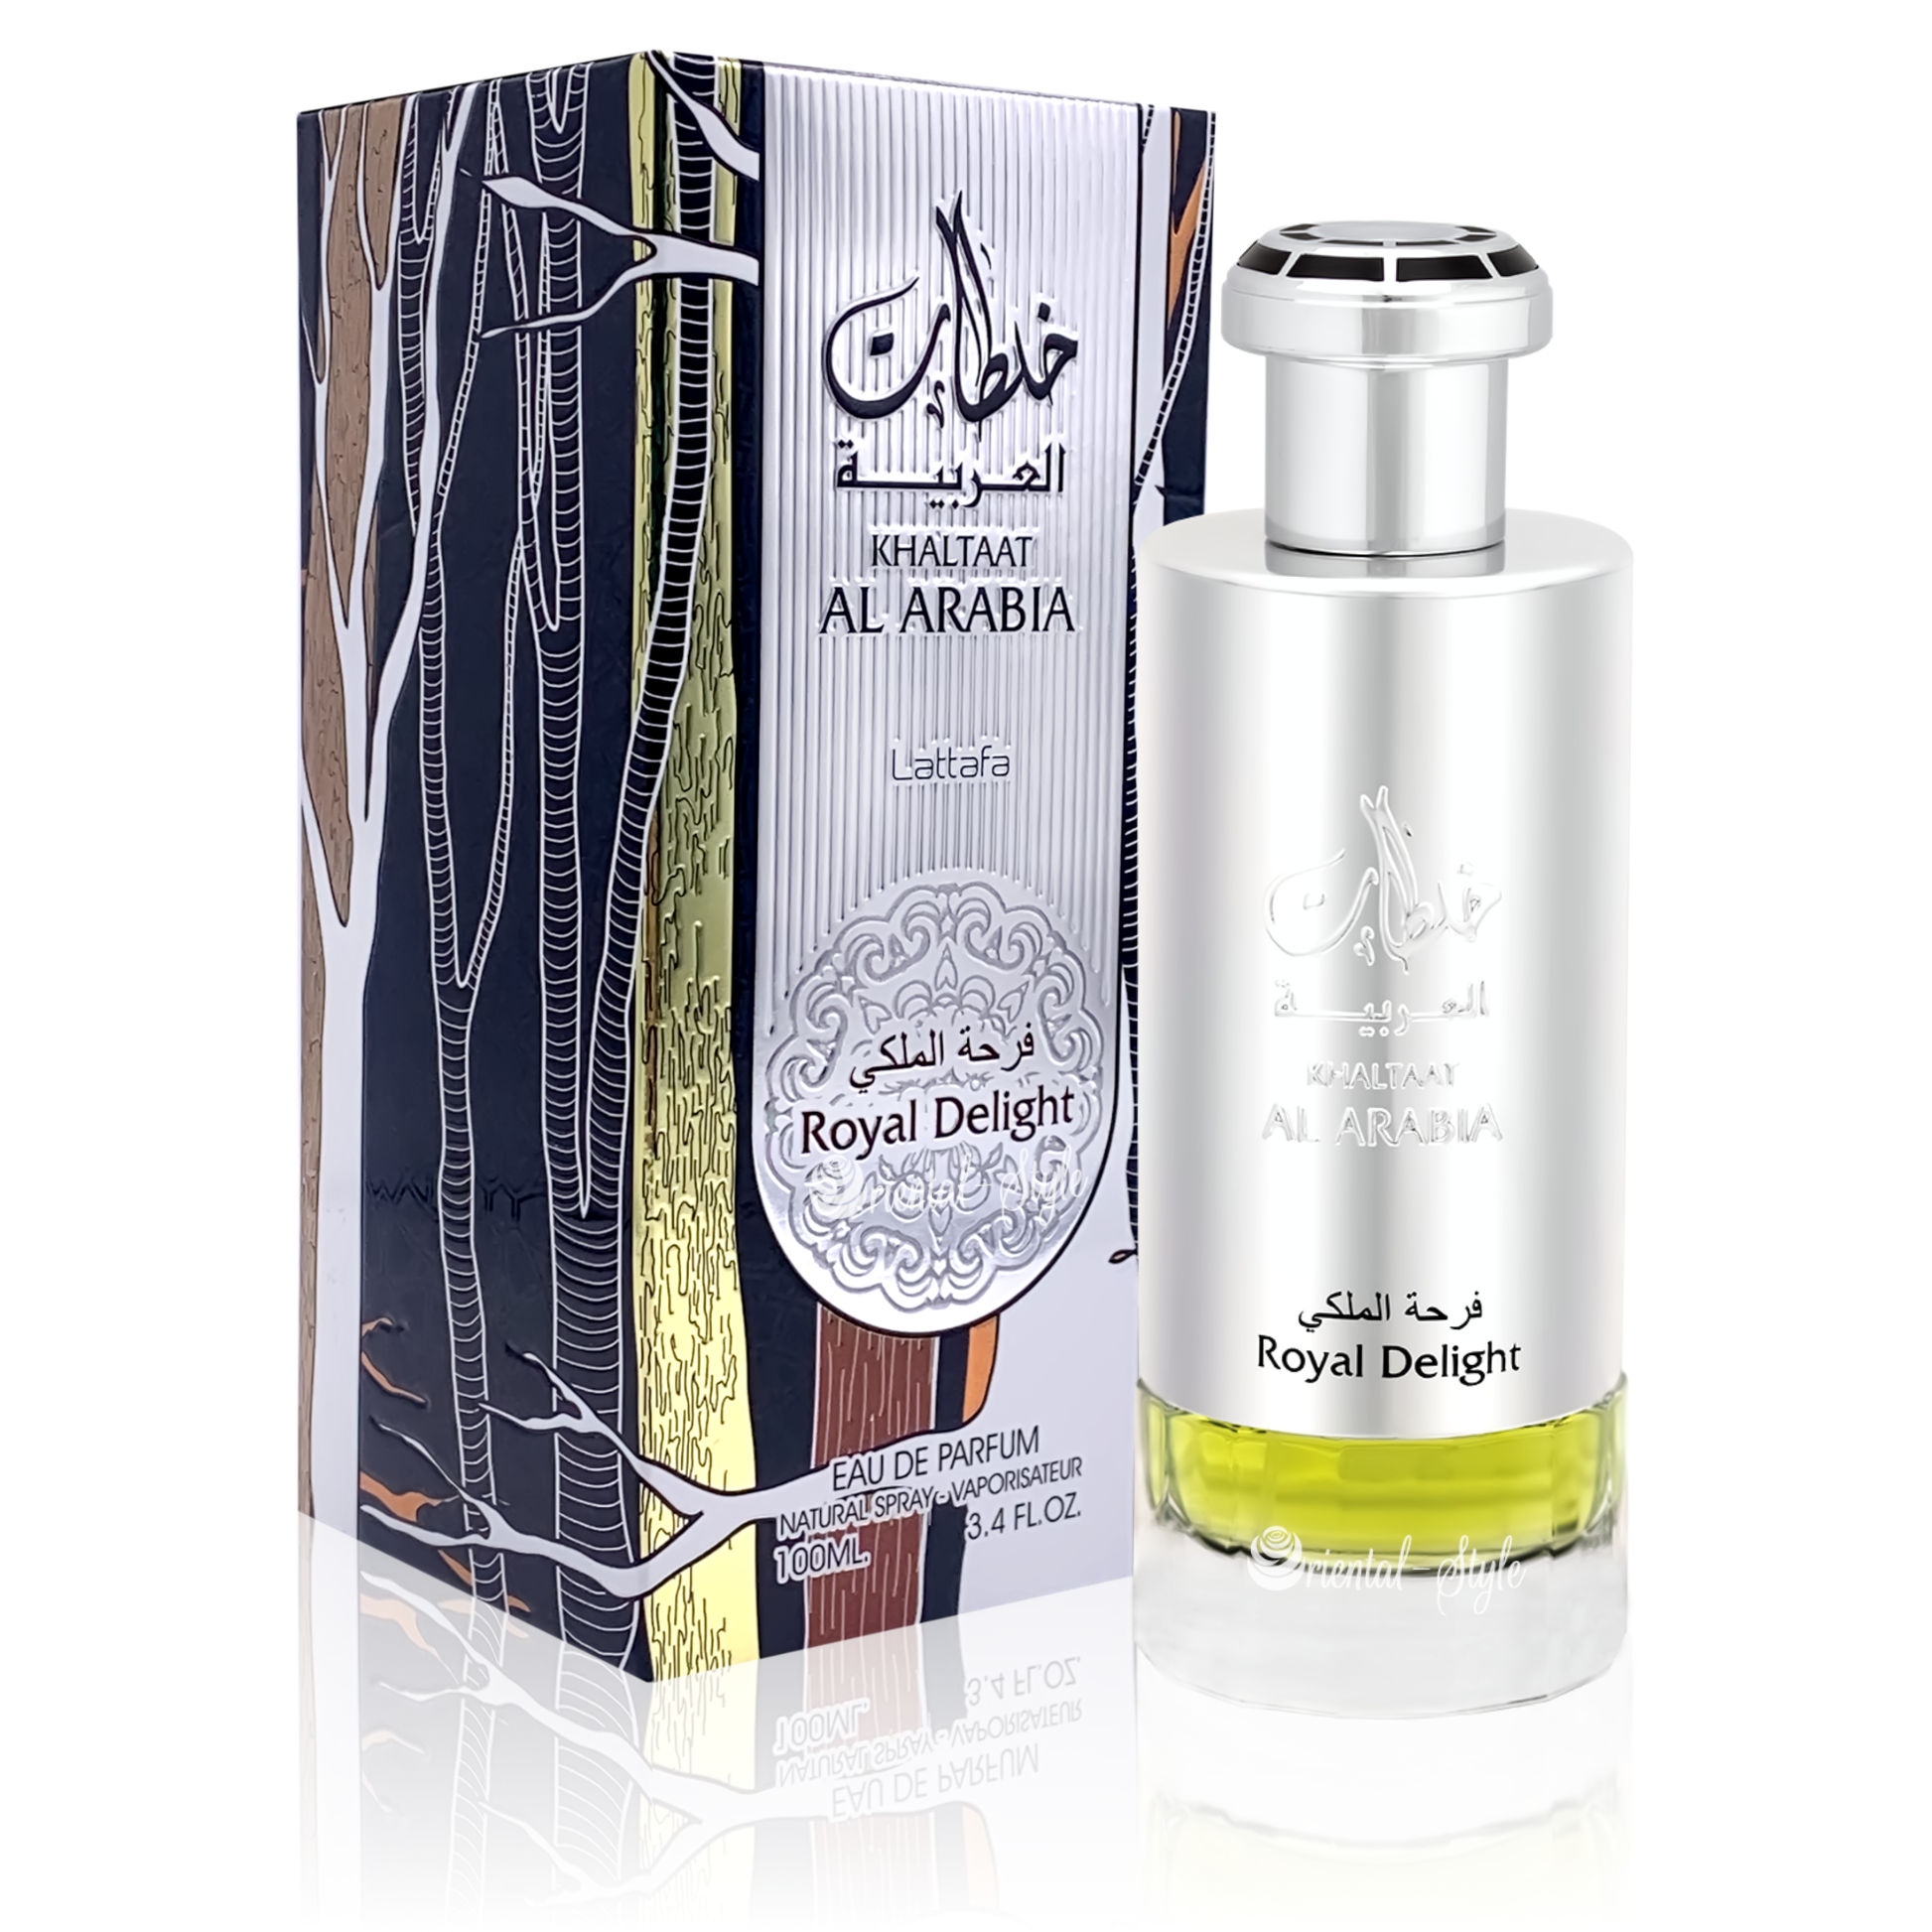 Khaltaat Al Arabia Royal Delight Eau de Parfum unisex - Perfume Planet 